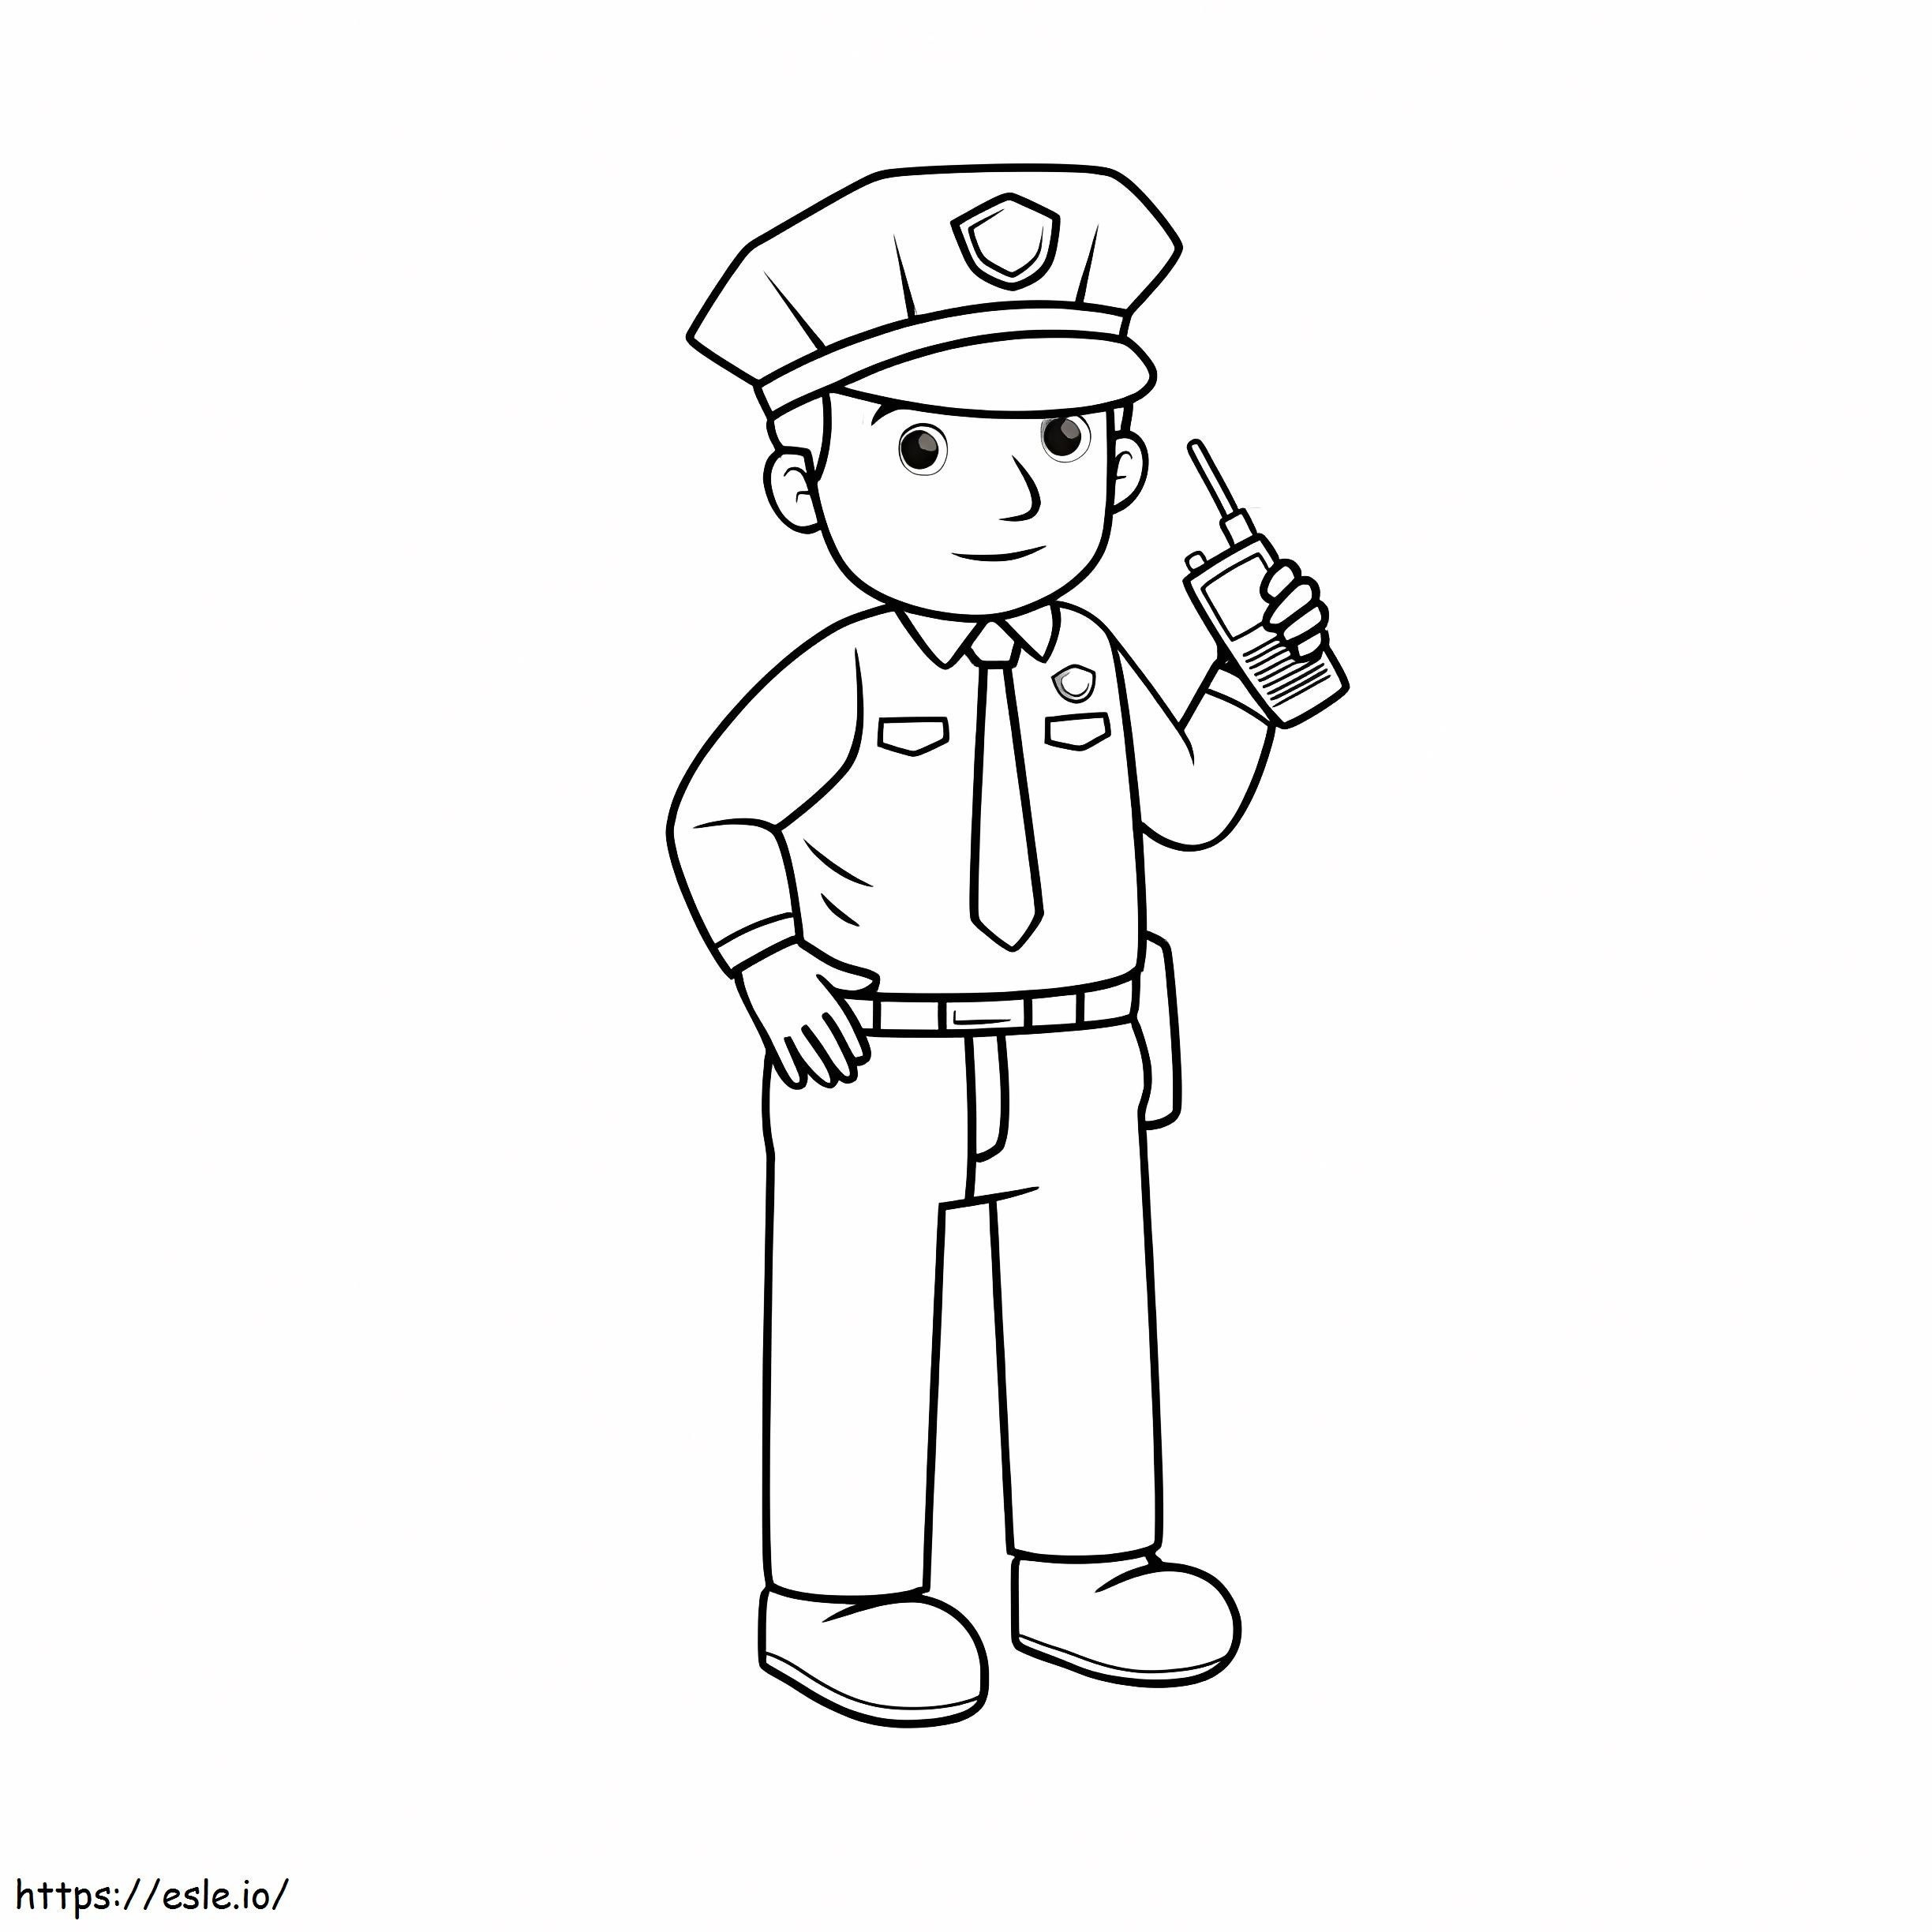 Poliția ține un walkie-talkie de colorat